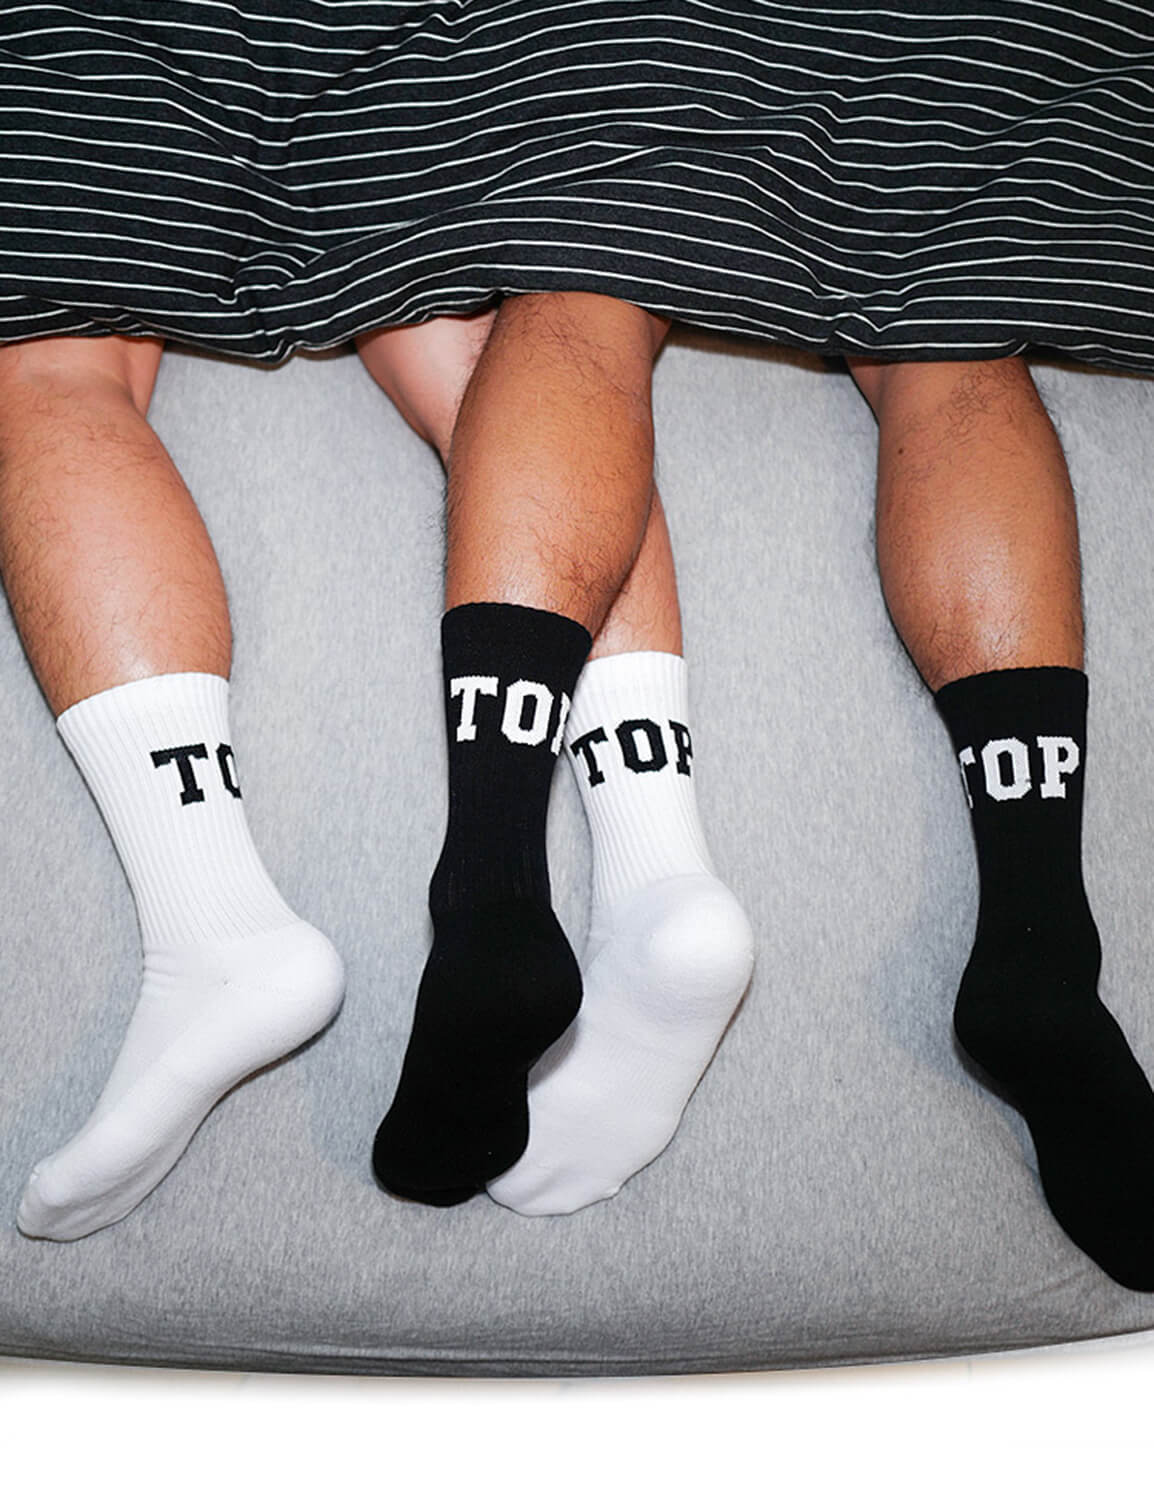 TOP/BTM Crew Socks SINGLE-PACK